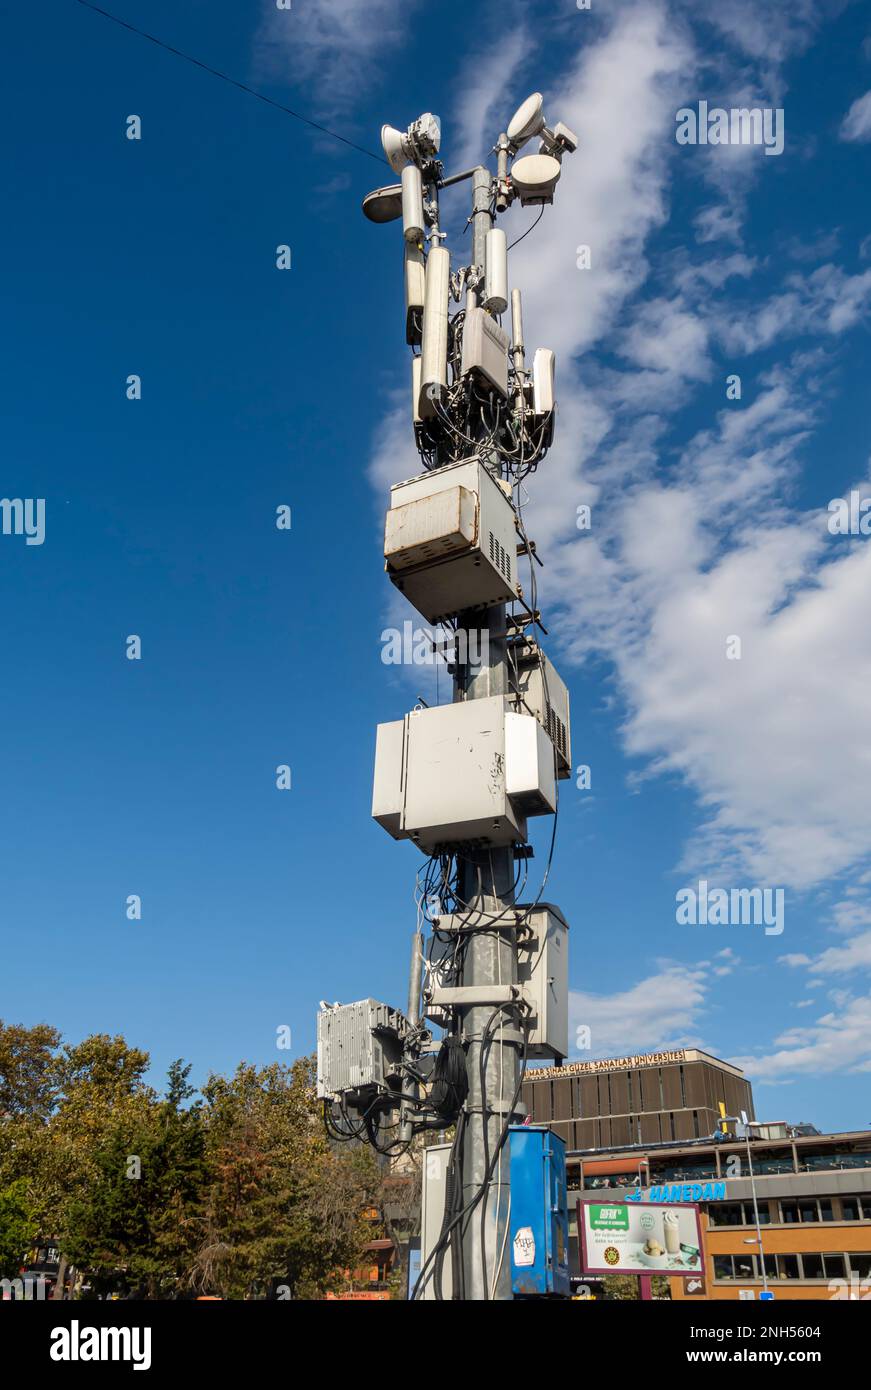 Funkmastantenne gegen blauen Himmel. Drahtlose Kommunikation mit dem mobilen Internet. Istanbul Türkei Stockfoto